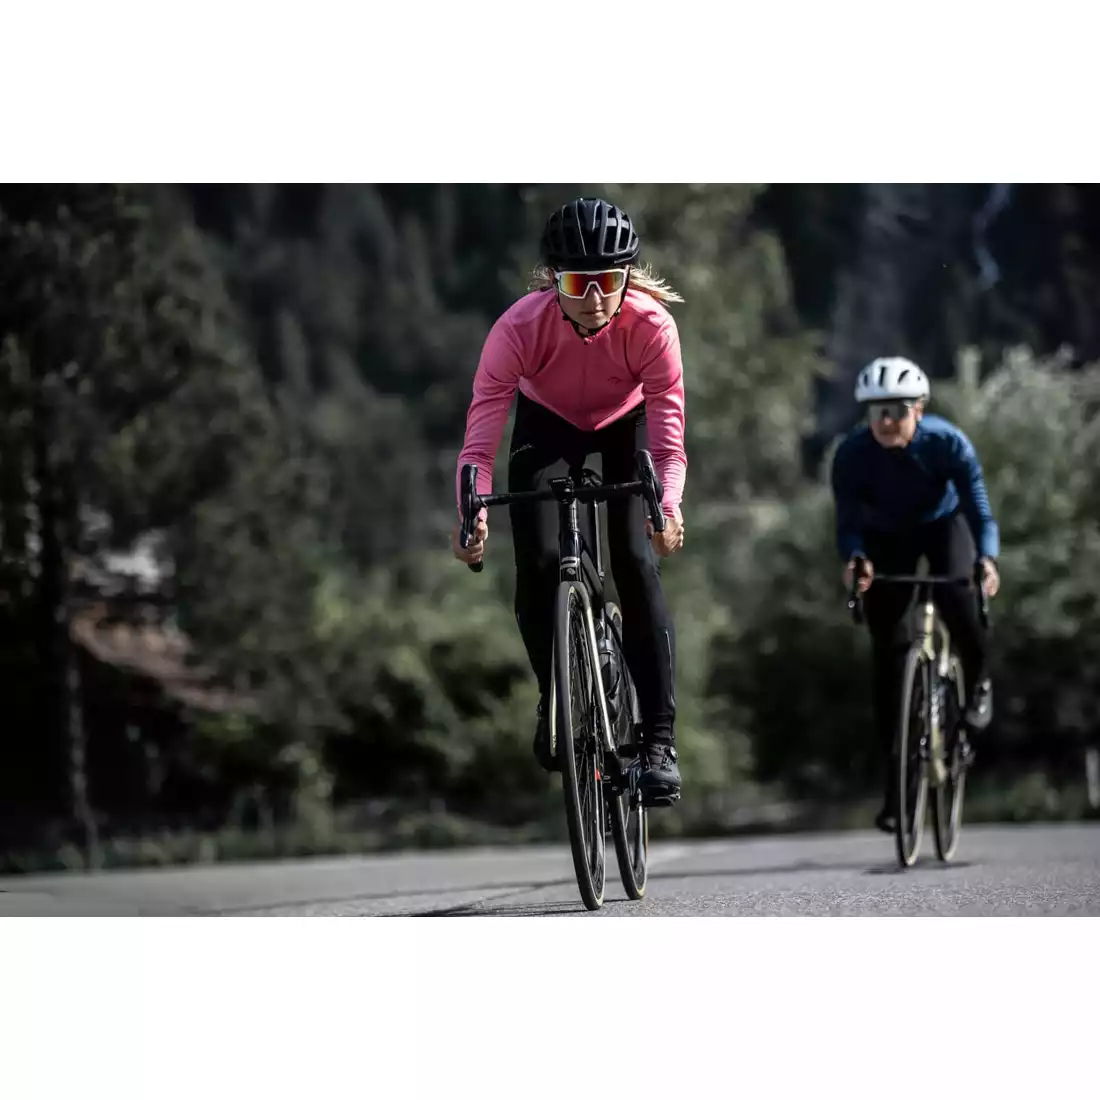 Rogelli CORE dámsky cyklistický dres s dlhým rukávom, ružová